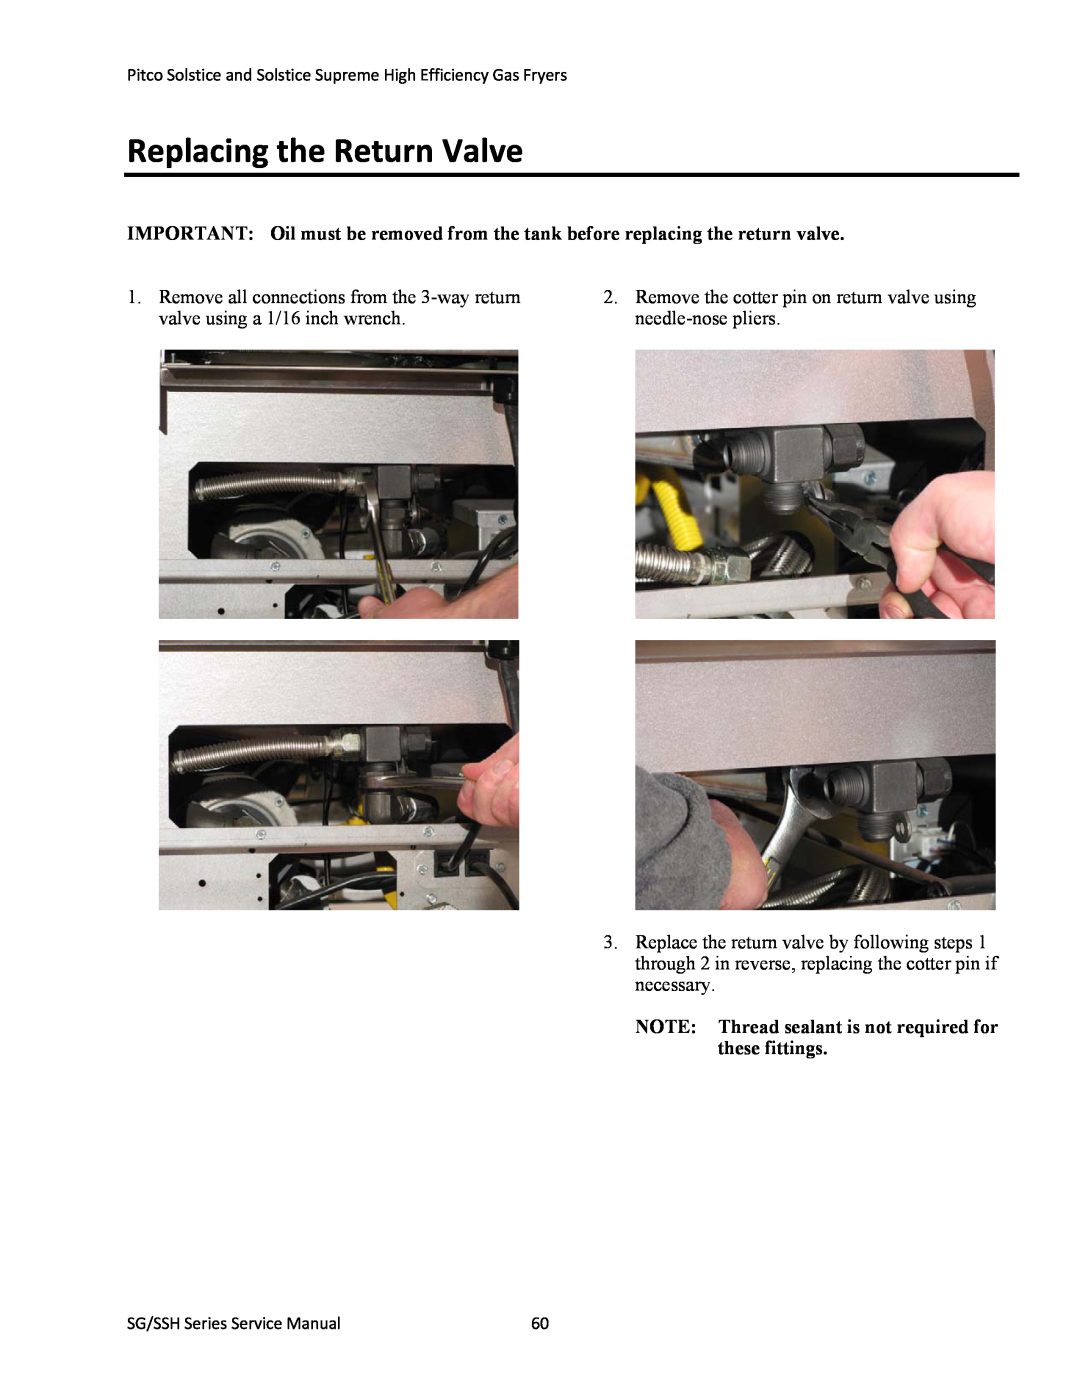 Pitco Frialator L22-345 manual Replacing the Return Valve 